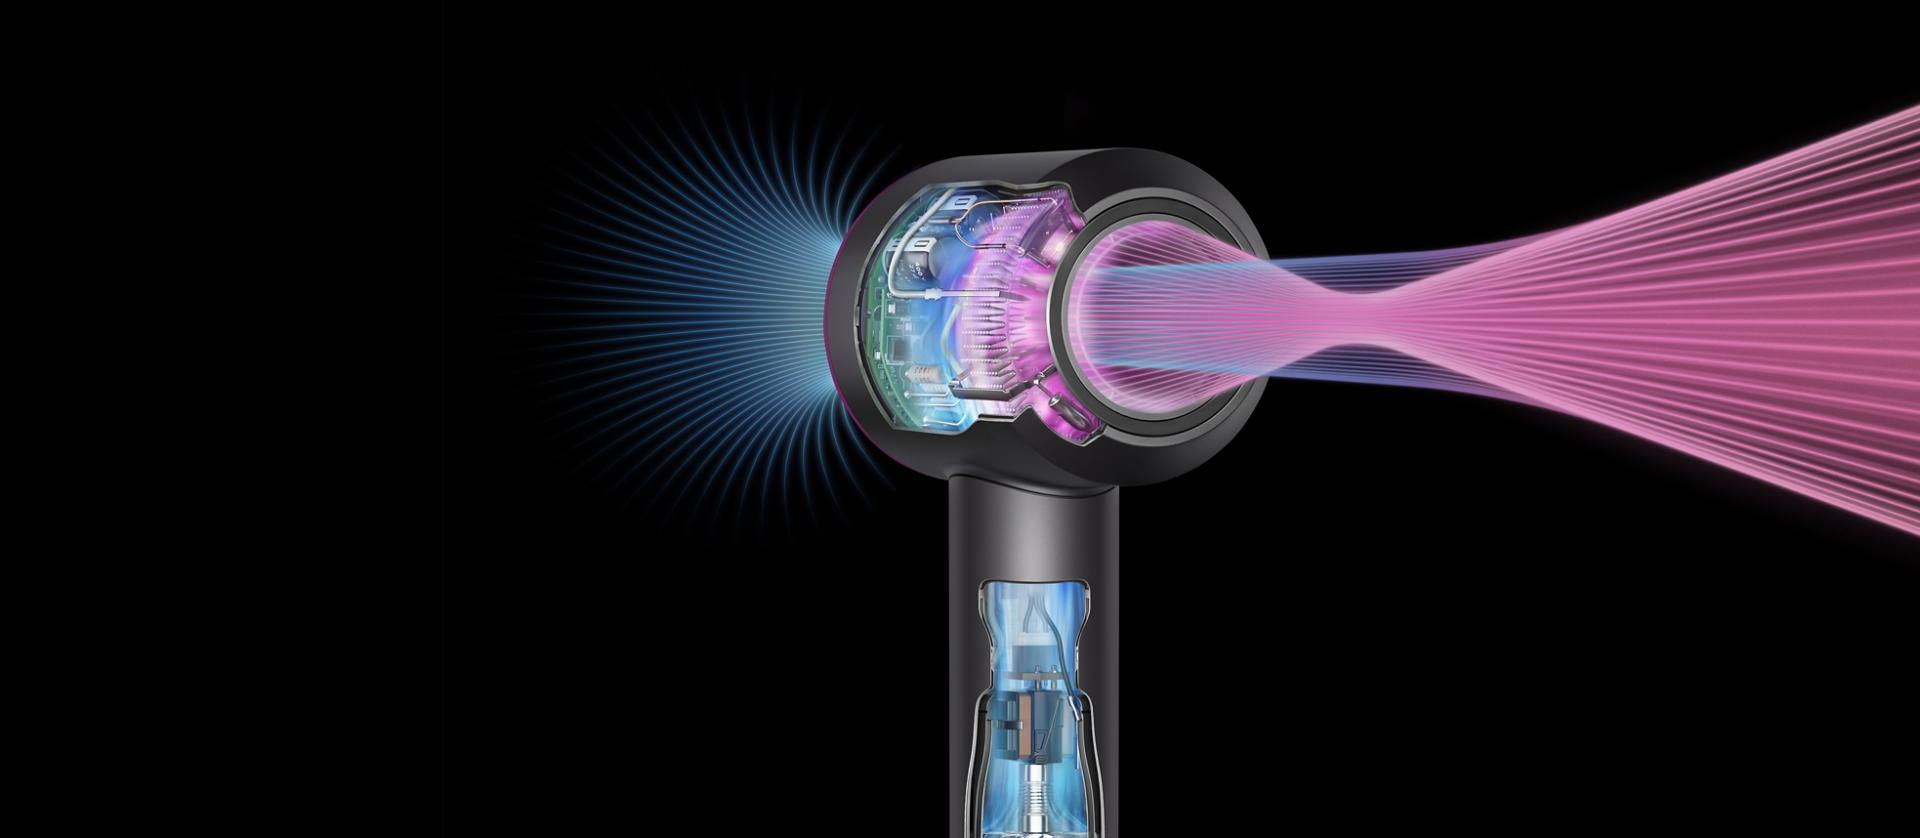 Dyson Supersonic’in içerisindeki çalışmanın resmi